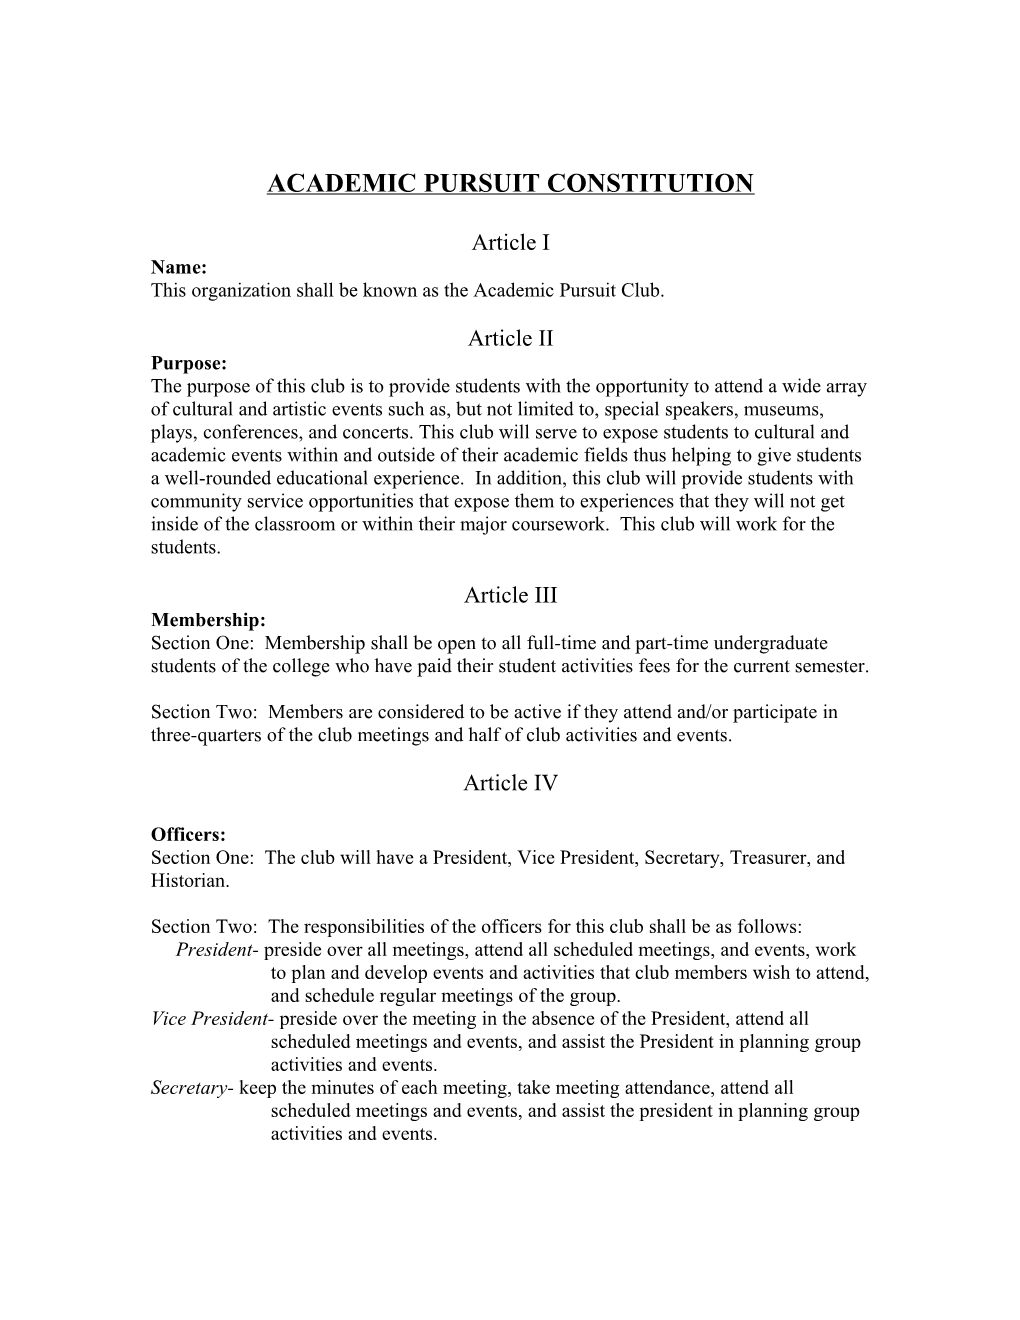 Academic Pursuit Constitution